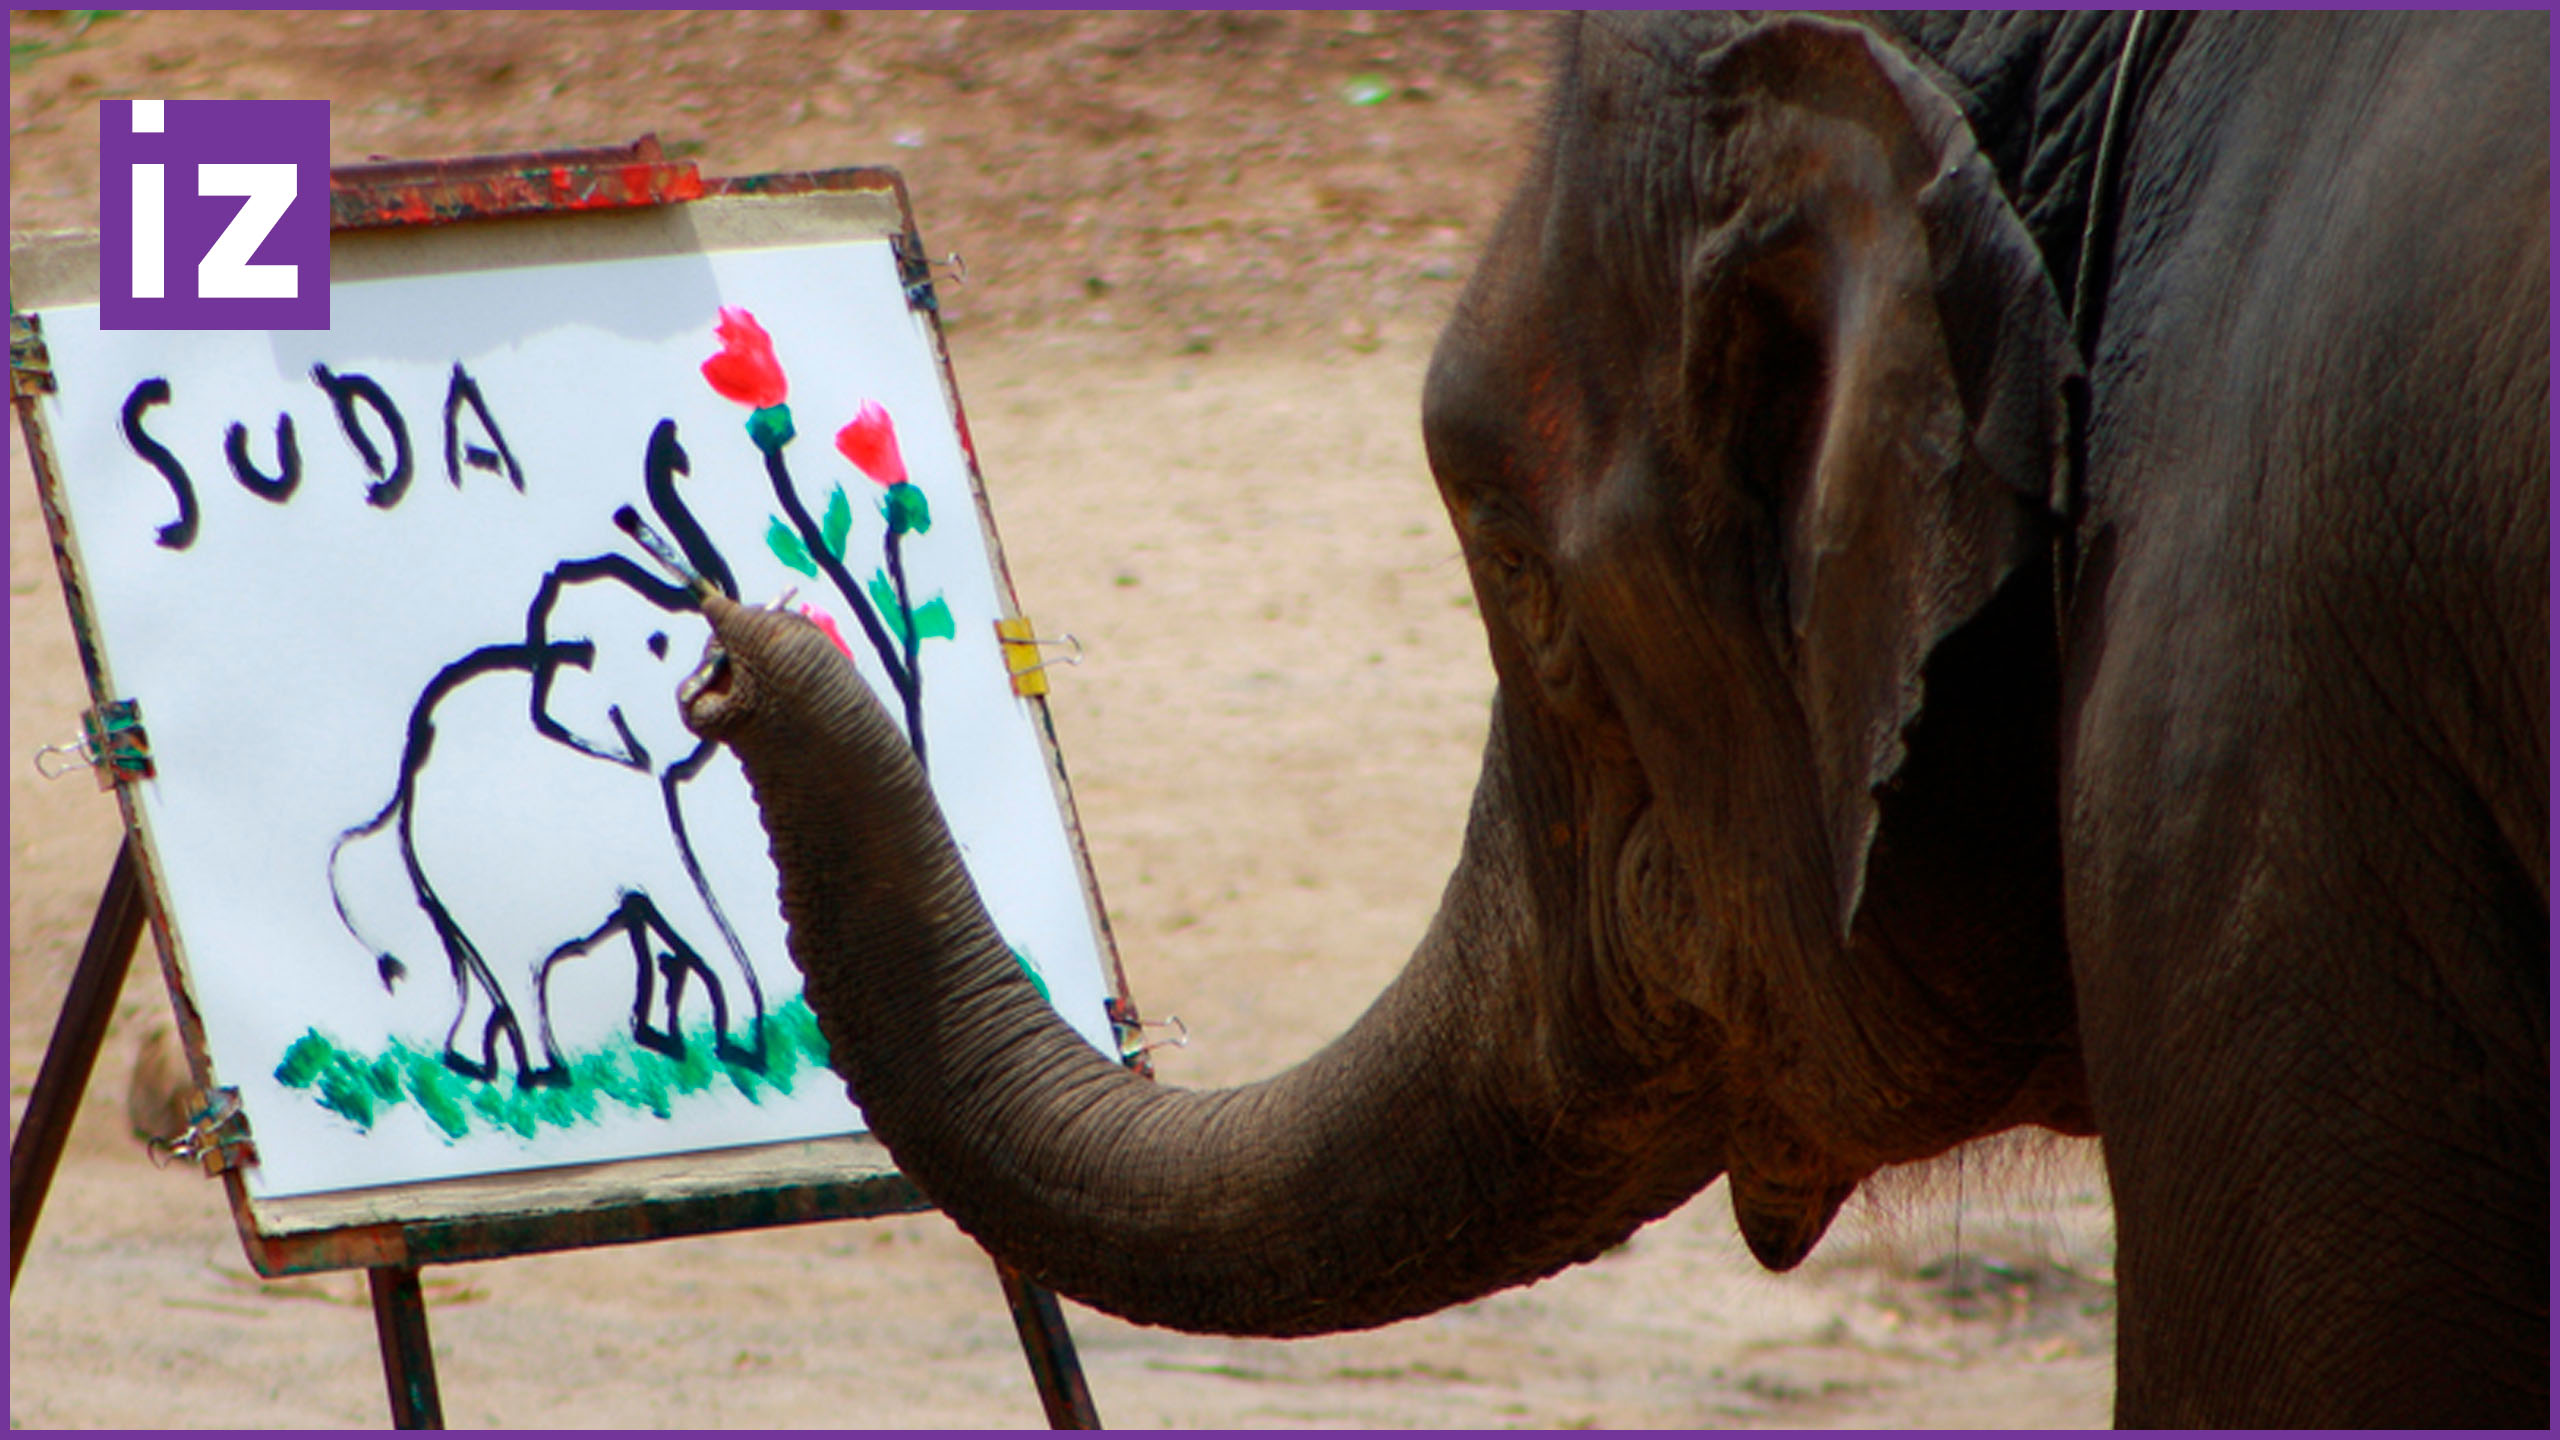 An elephant can climb. Слон рисмуе т хоботом. Слоны умные животные. Рисуем слона. Слон рисует картины.